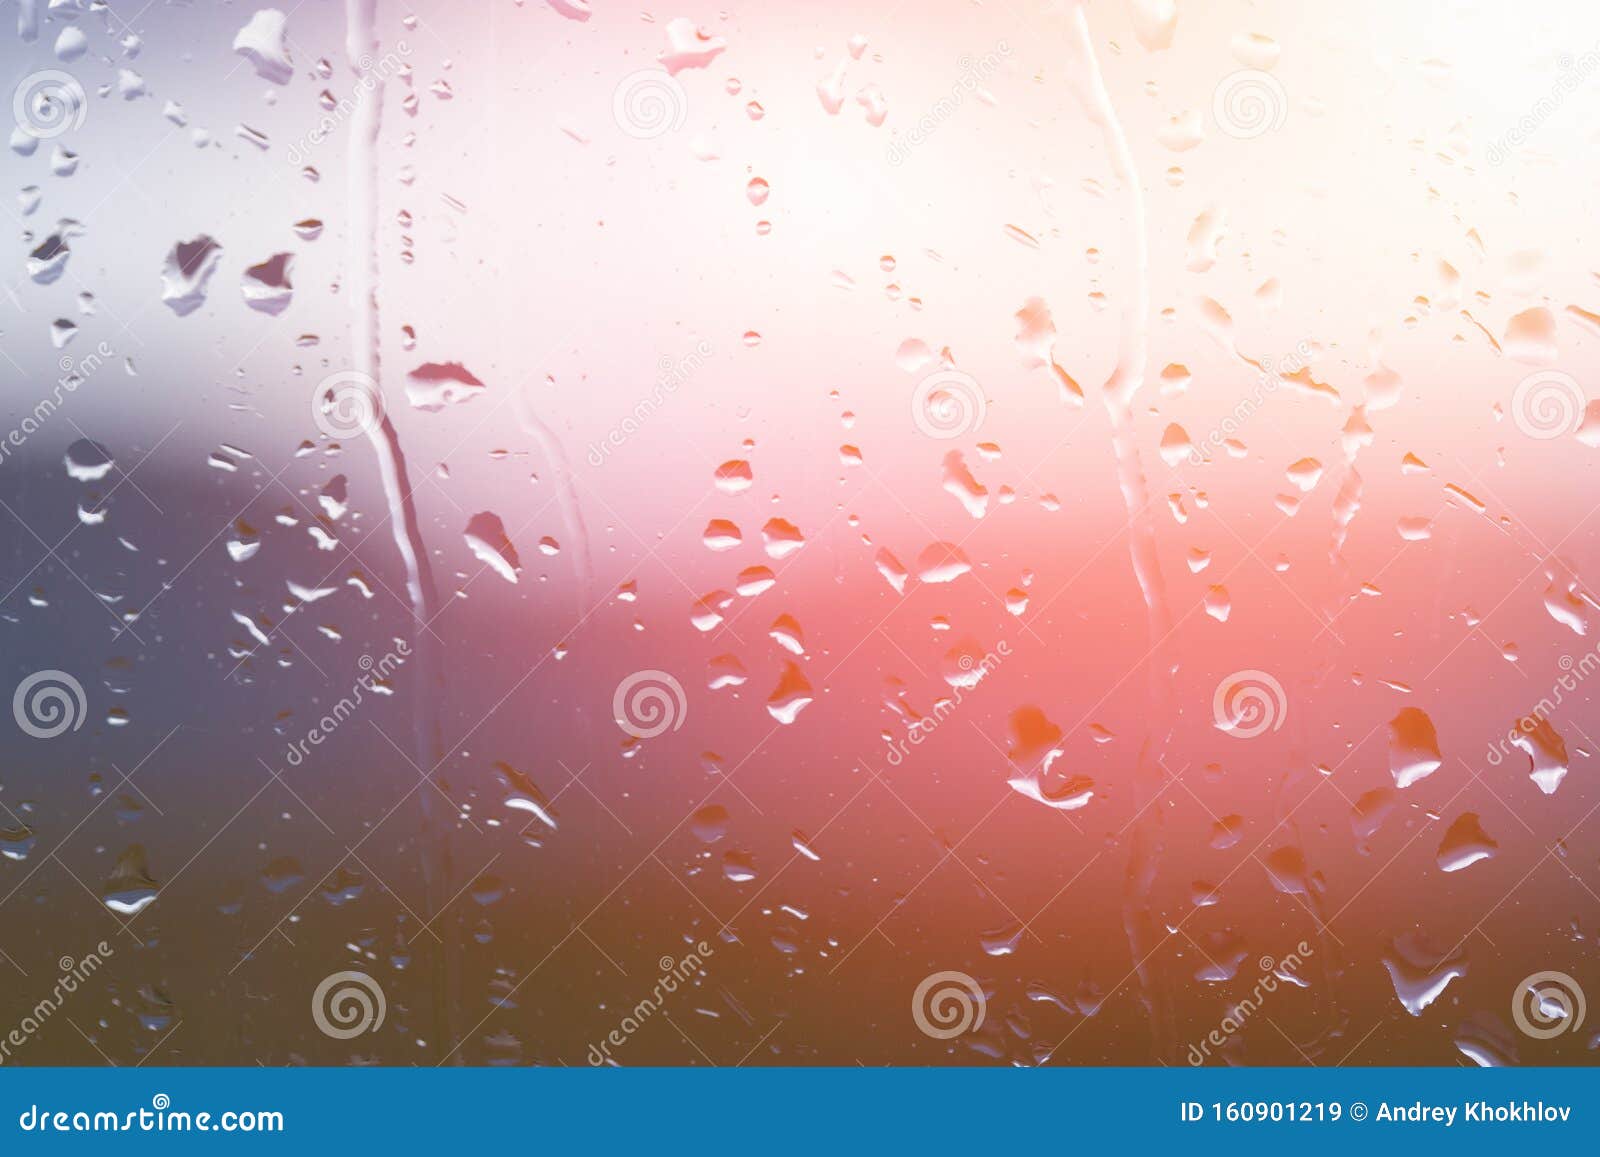 雨后窗玻璃上的水滴 背景上夕阳明显模糊田园诗般的宁静自然壁纸库存图片 图片包括有田园诗般的宁静自然壁纸 雨后窗玻璃上的水滴 背景上夕阳明显模糊